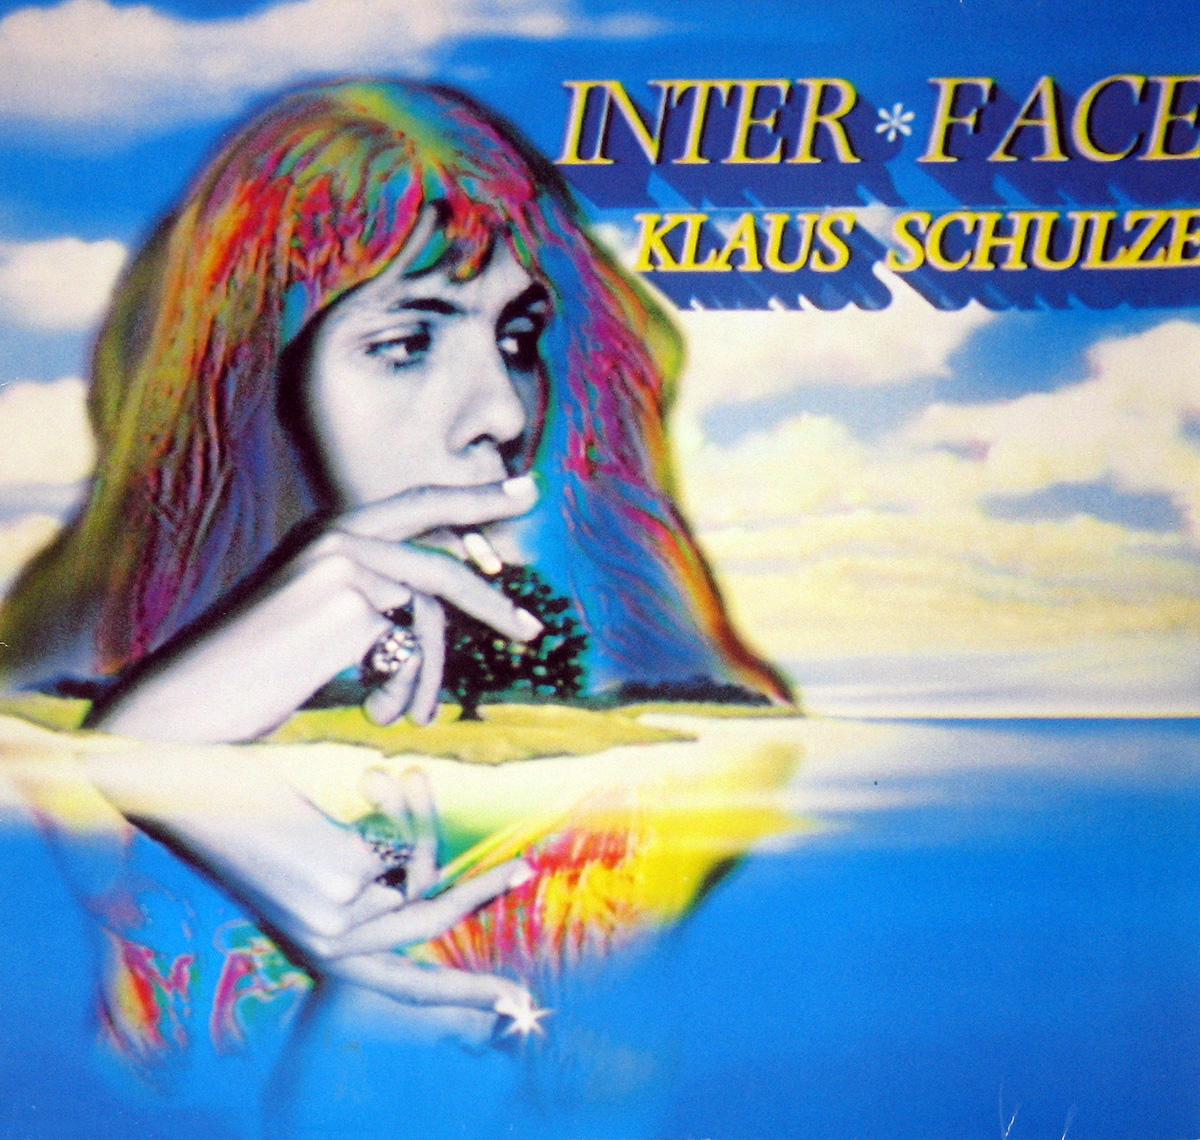 Album Front Cover Klaus Schulze  Inter*Face